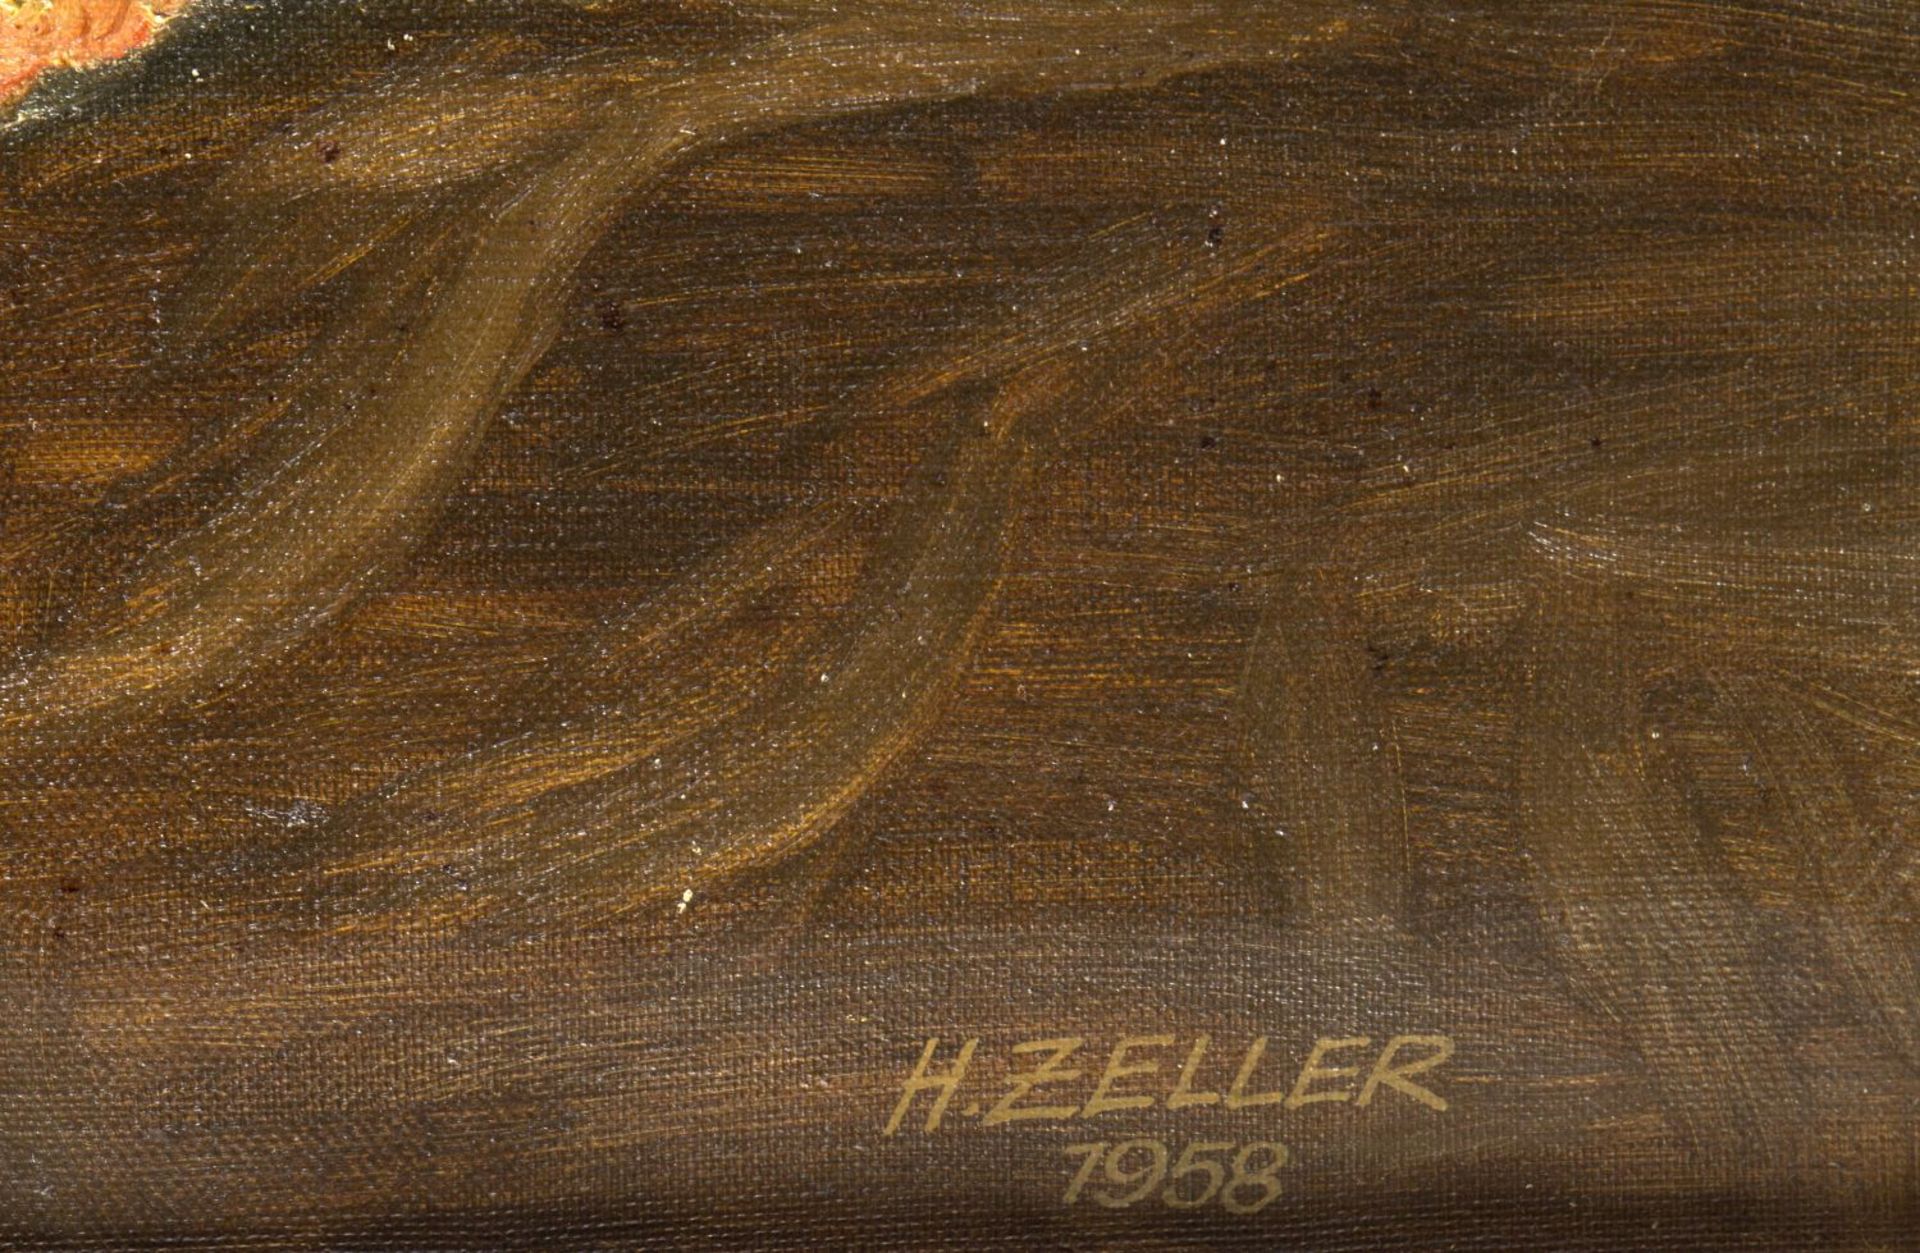 Zeller, H.Stillleben mit Rosen. Öl/Lwd. Sign. und dat. 1958. 60 x 50 cm. Gerahmt. - Image 2 of 3